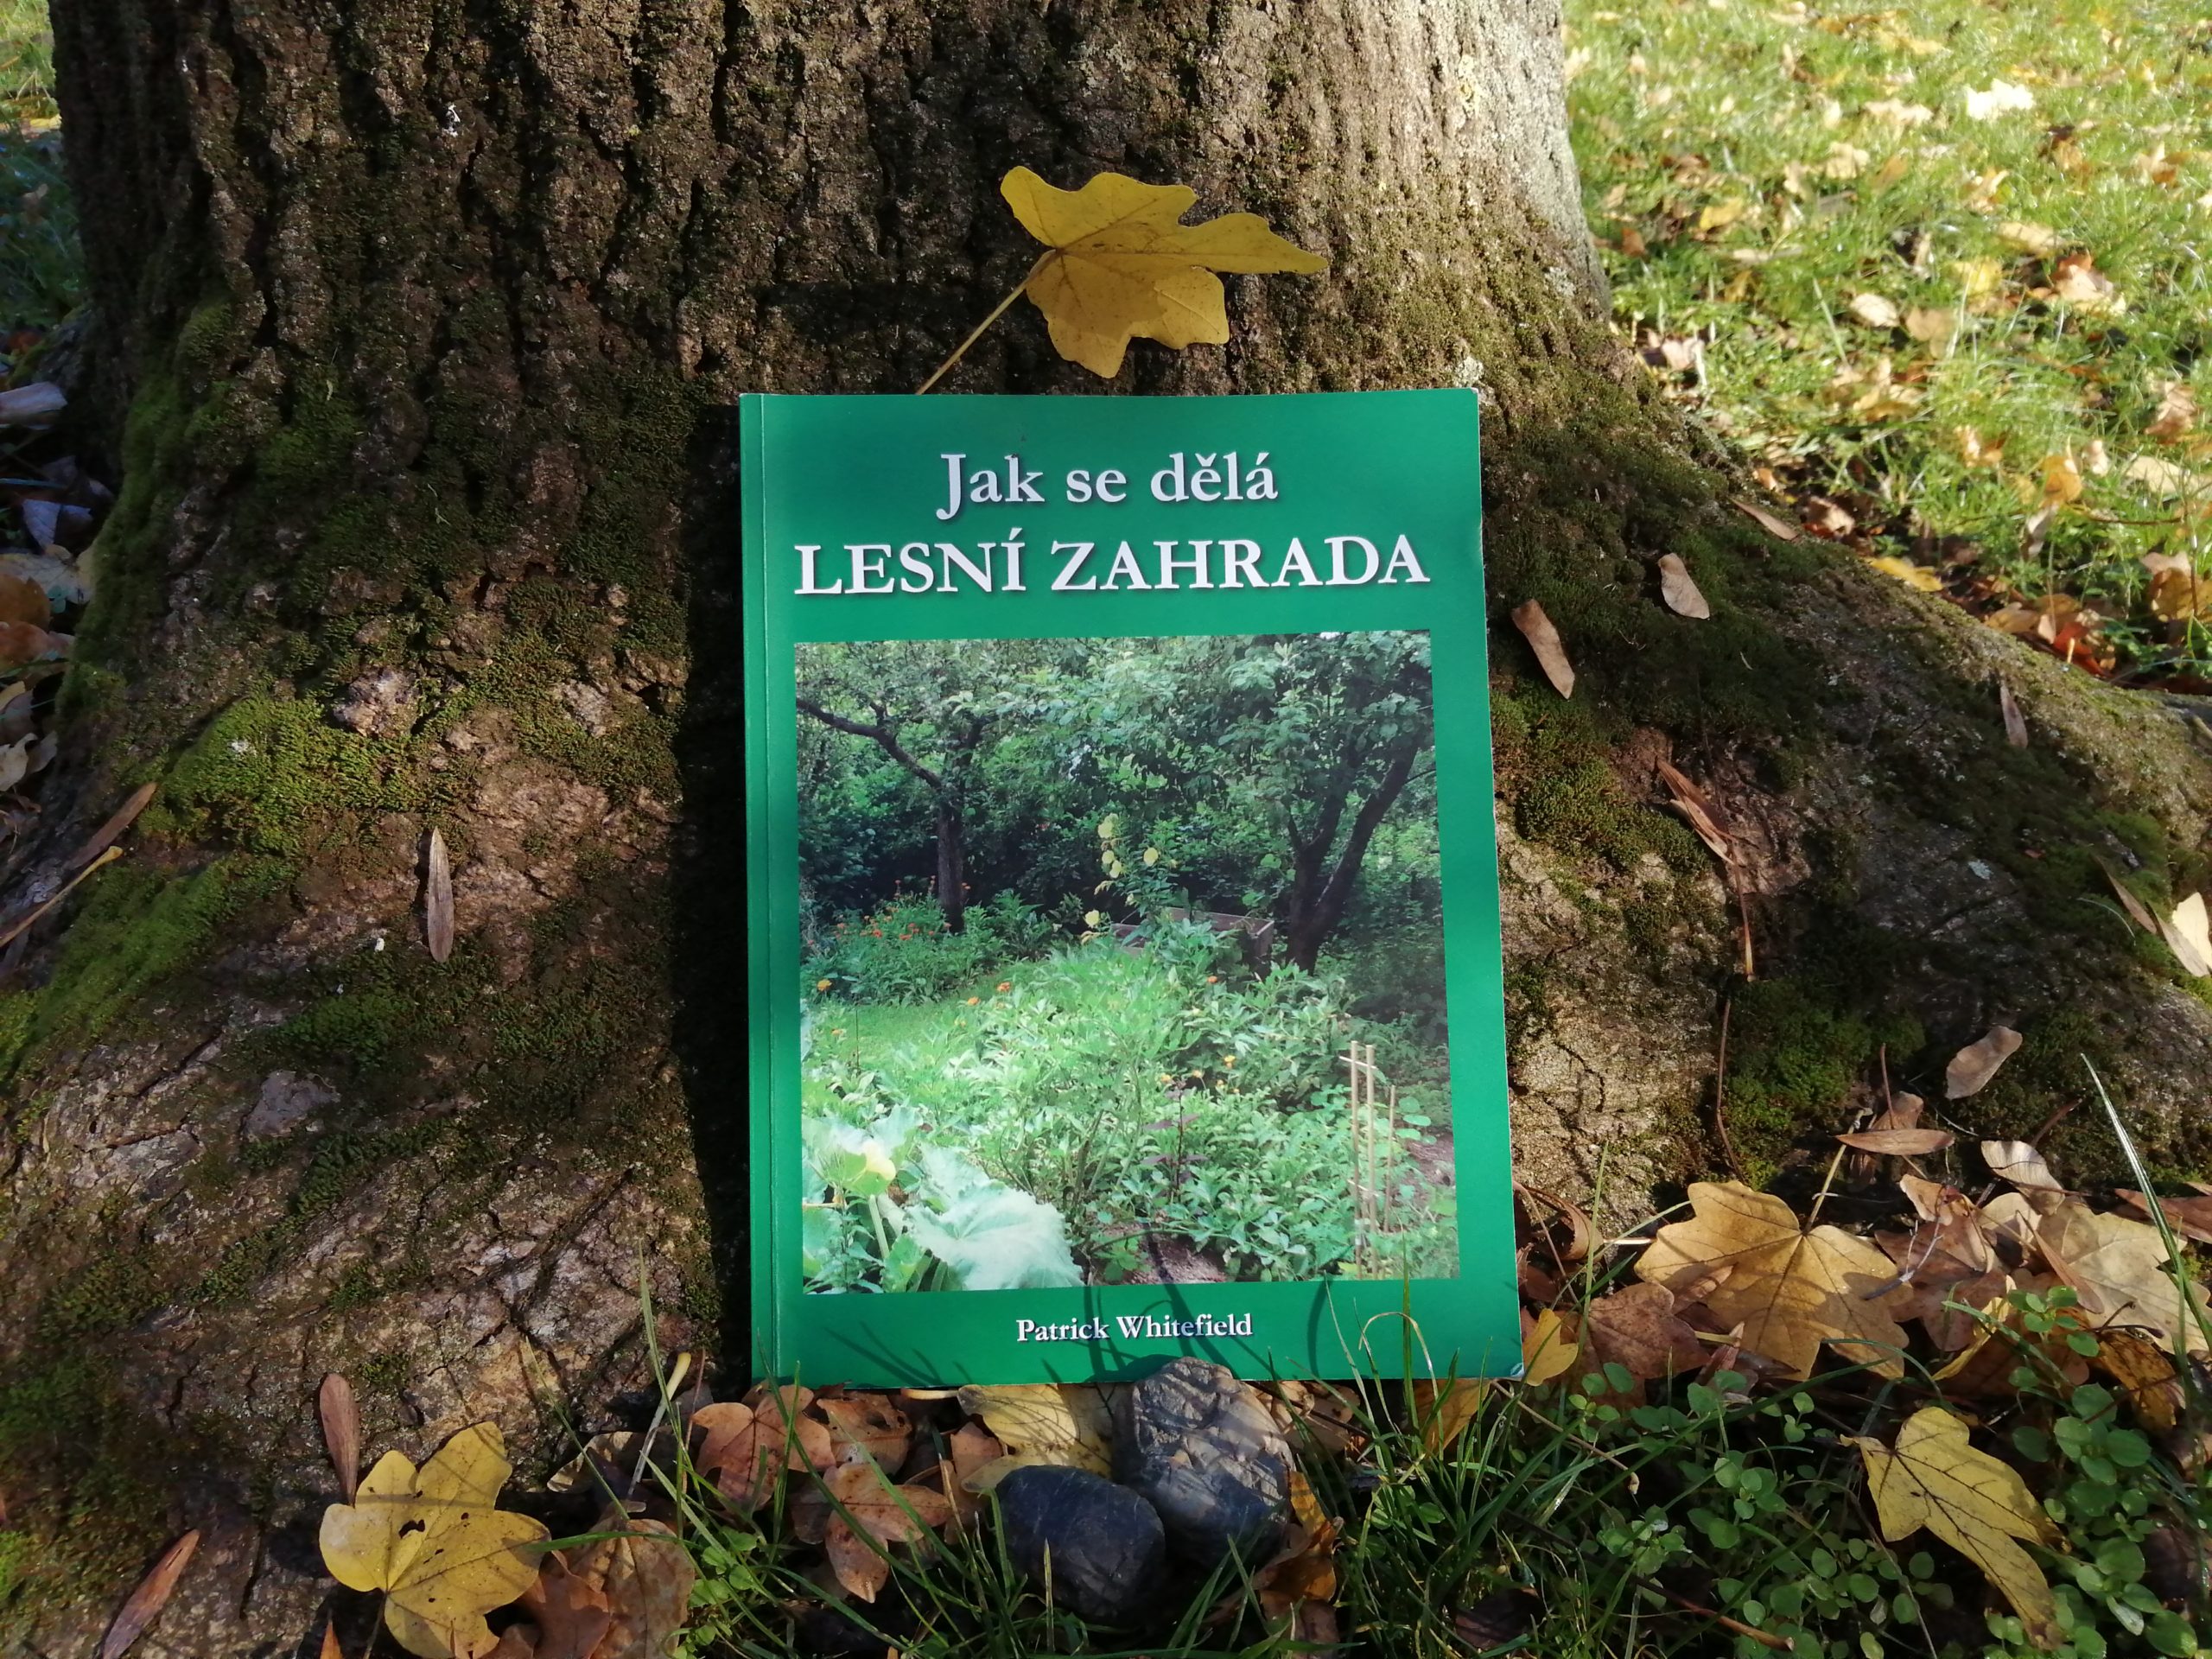 Knihu Jak se dělá lesní zahrada vydalo nakladatelství Kompost Press spolku Permakultura (CS) v roce 2020. Zdroj: zajimej.se